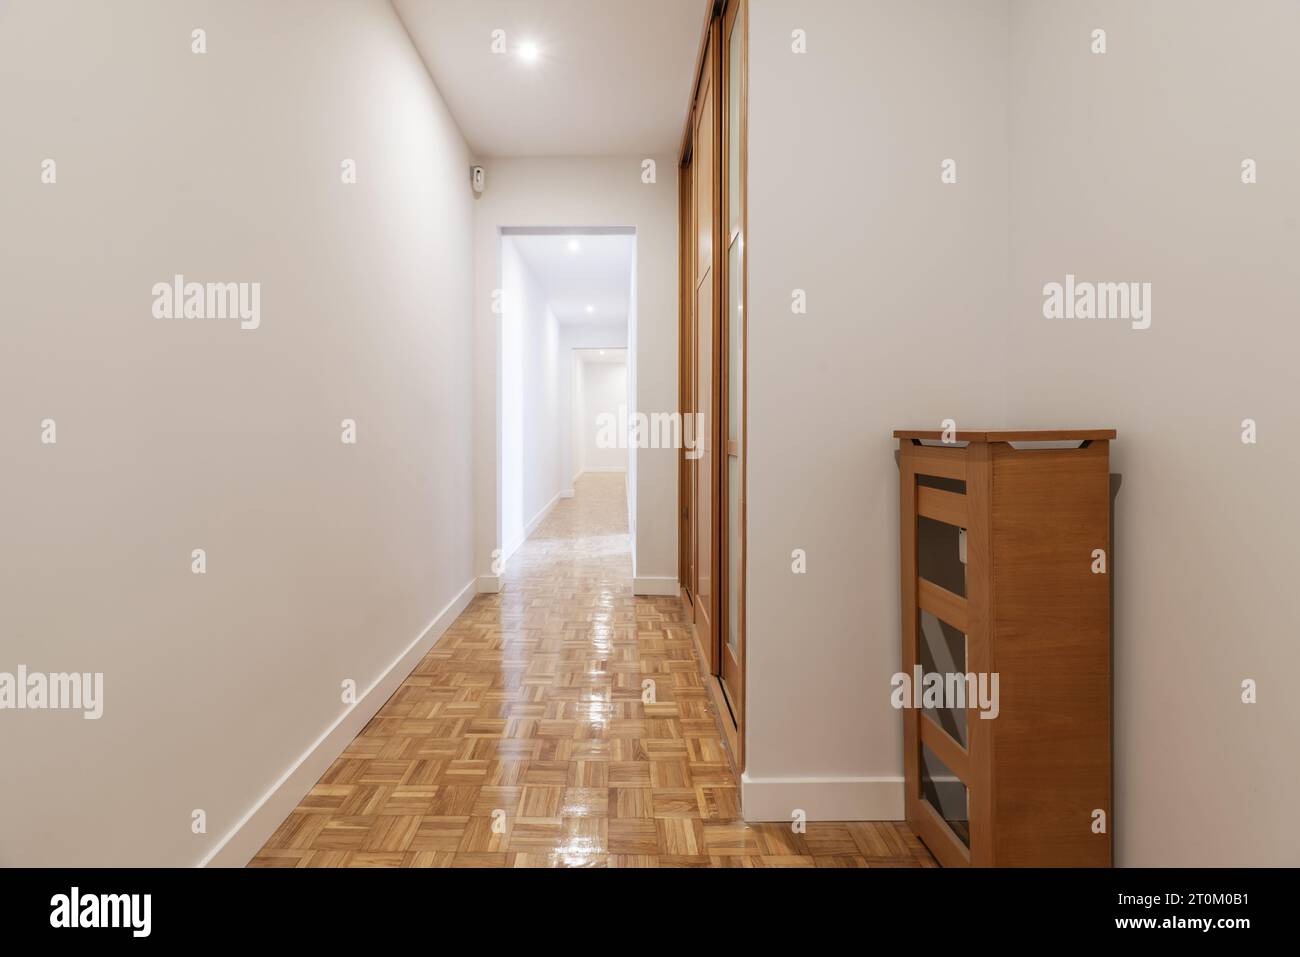 Eingangshalle eines Hauses mit Heizkörperabdeckung, eingebautem Kleiderschrank, langem Flur mit frisch gestrichenen glatten weißen Wänden und Parkettboden Stockfoto